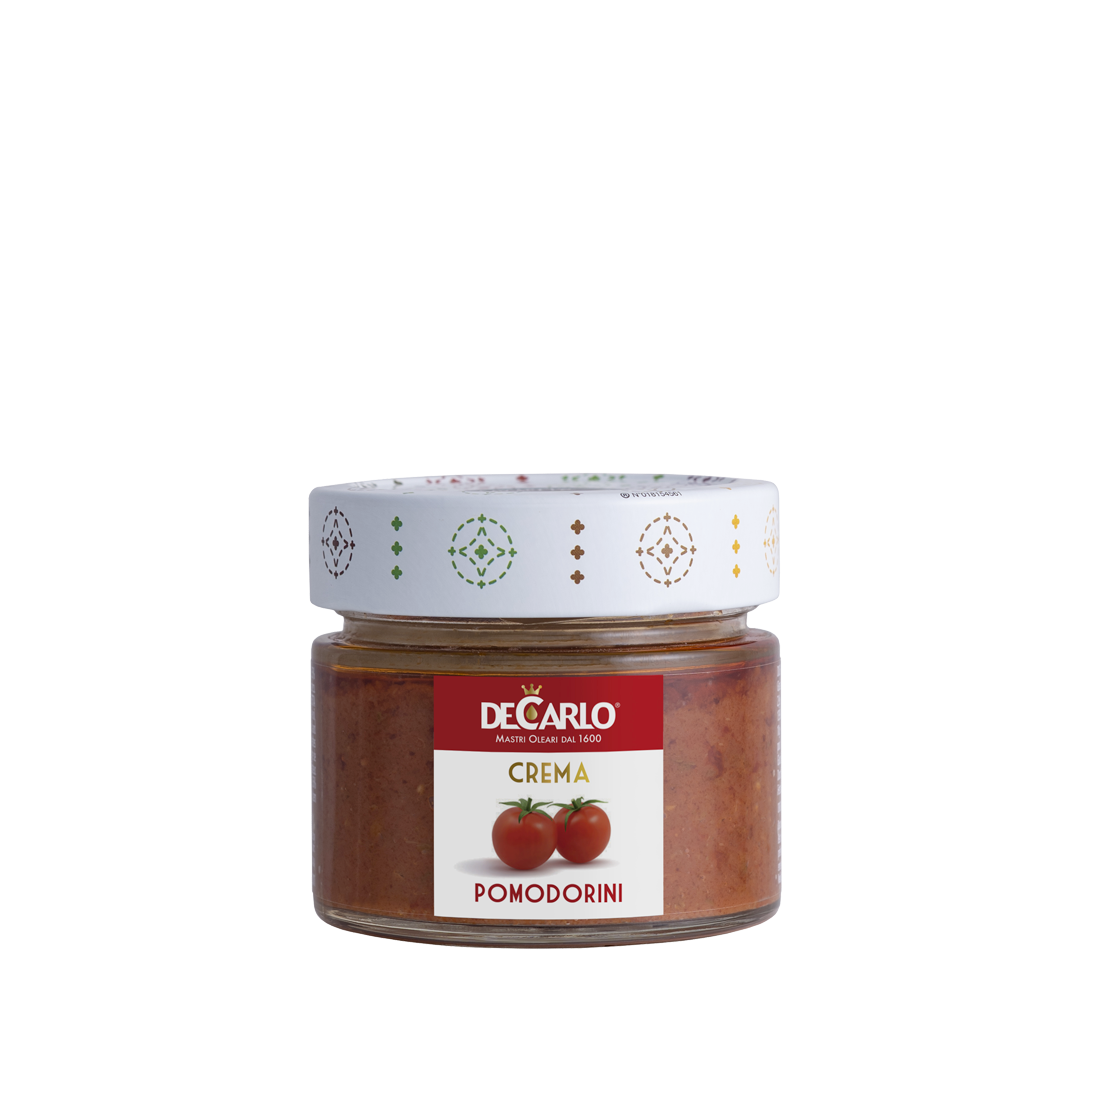 DeCarlo Red Tomato Passion Spread Pomodorini DCA-007